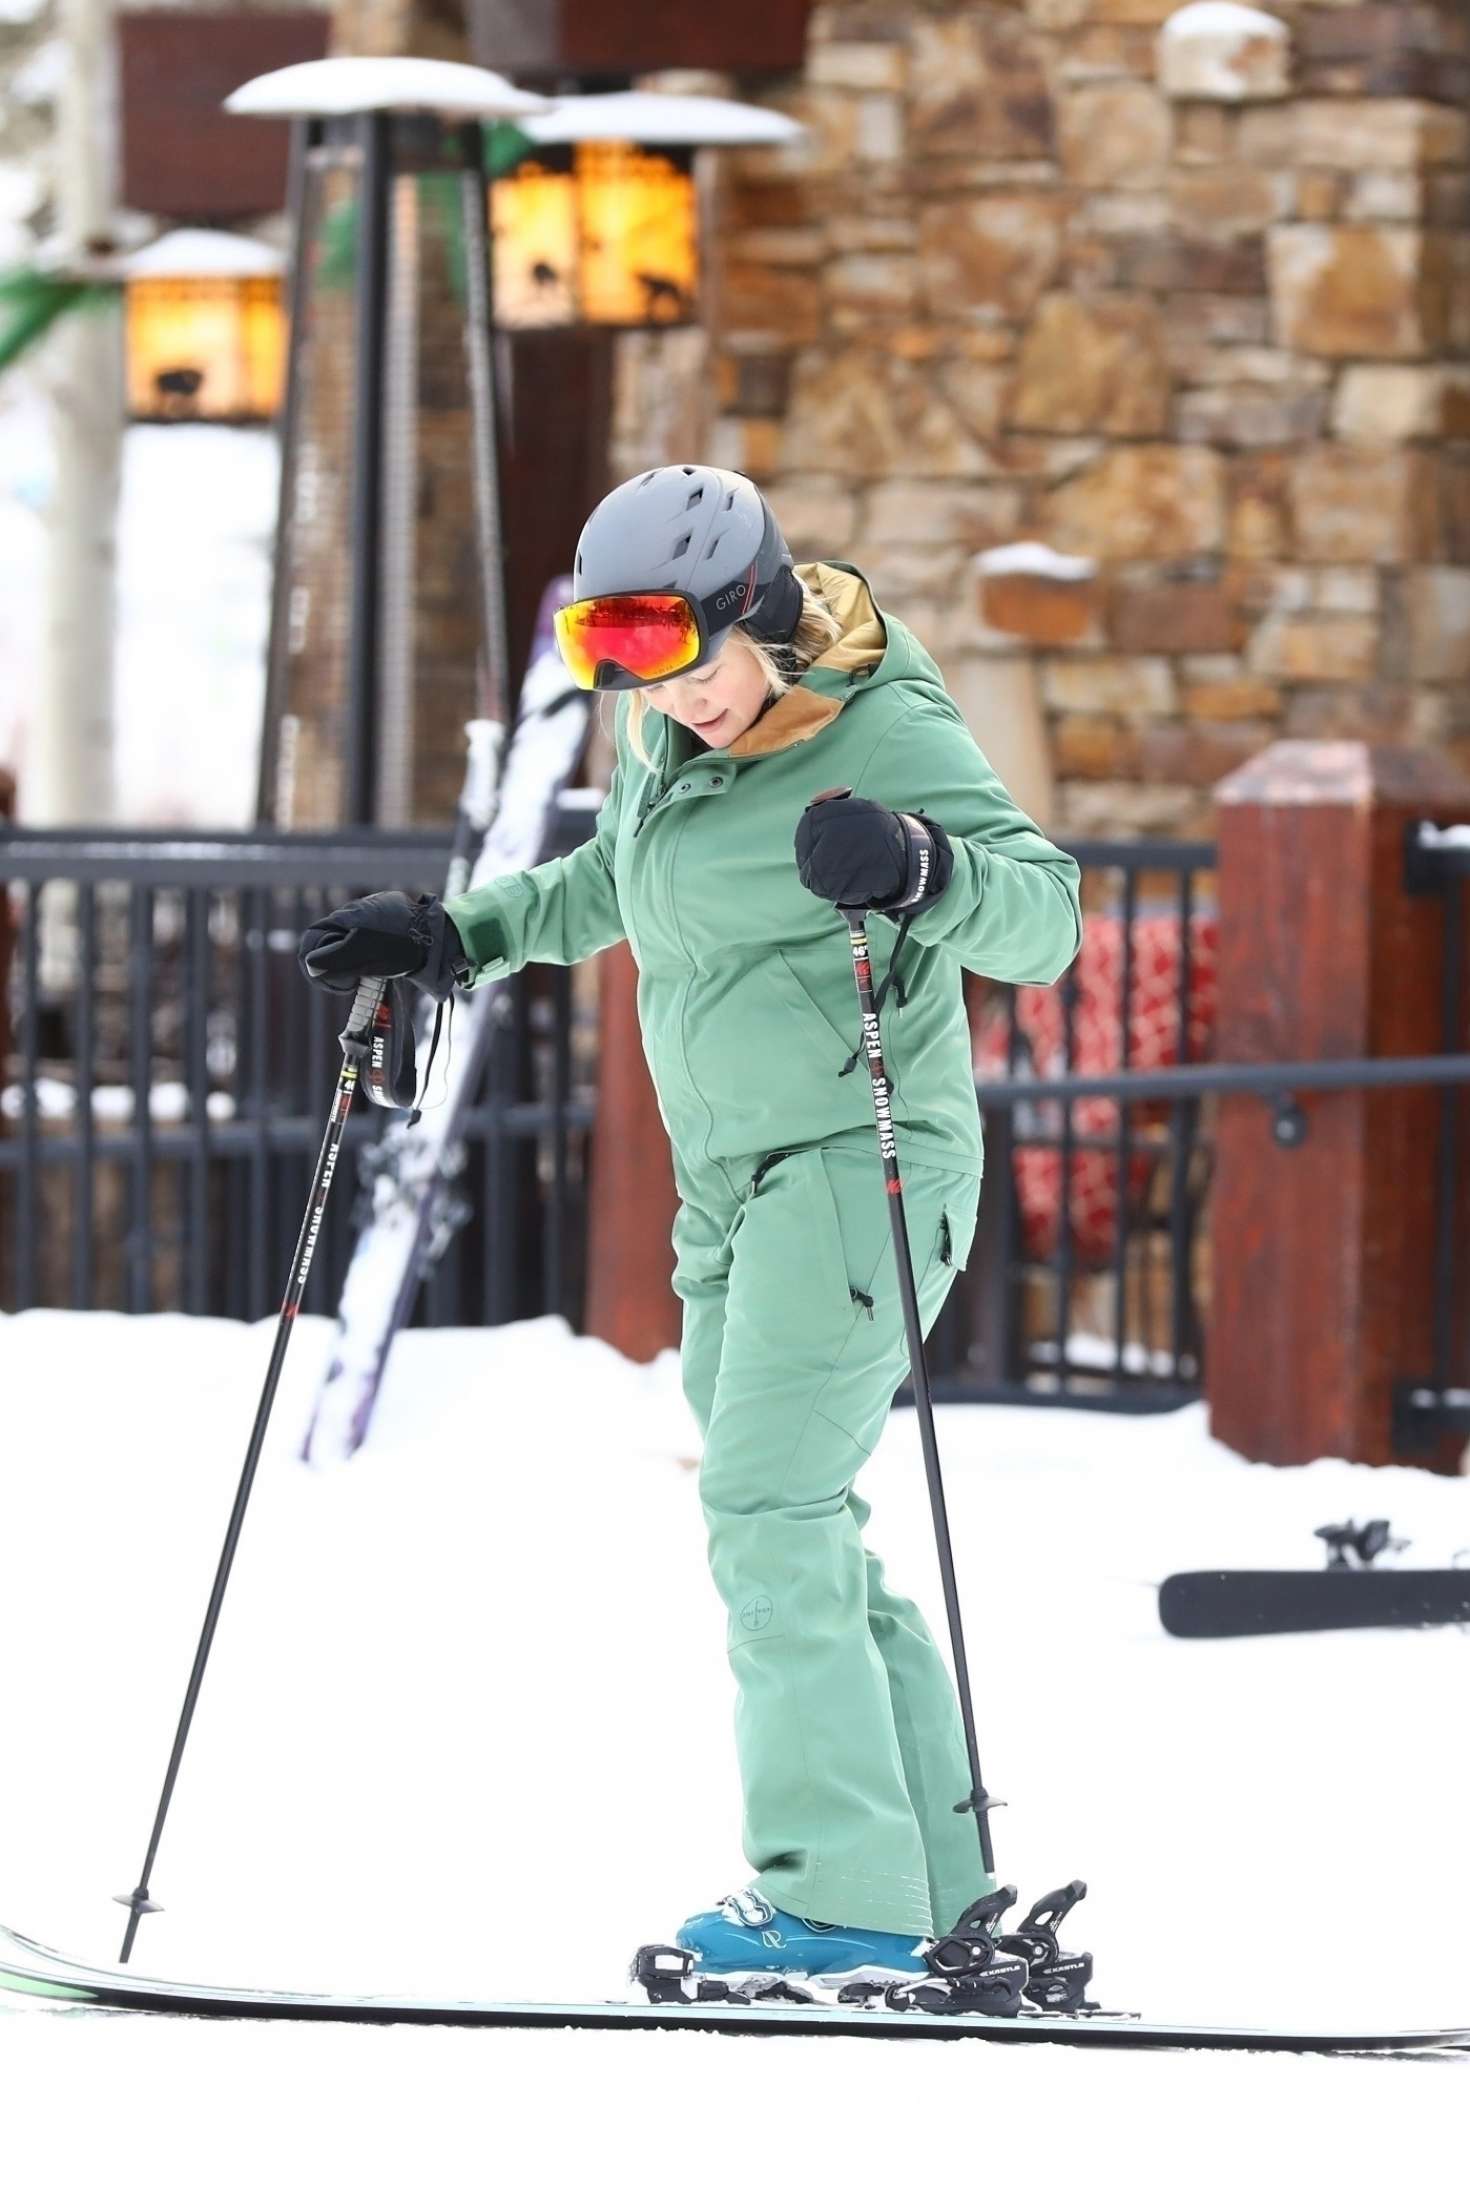 Kate Hudson â€“ On the slopes in Aspen